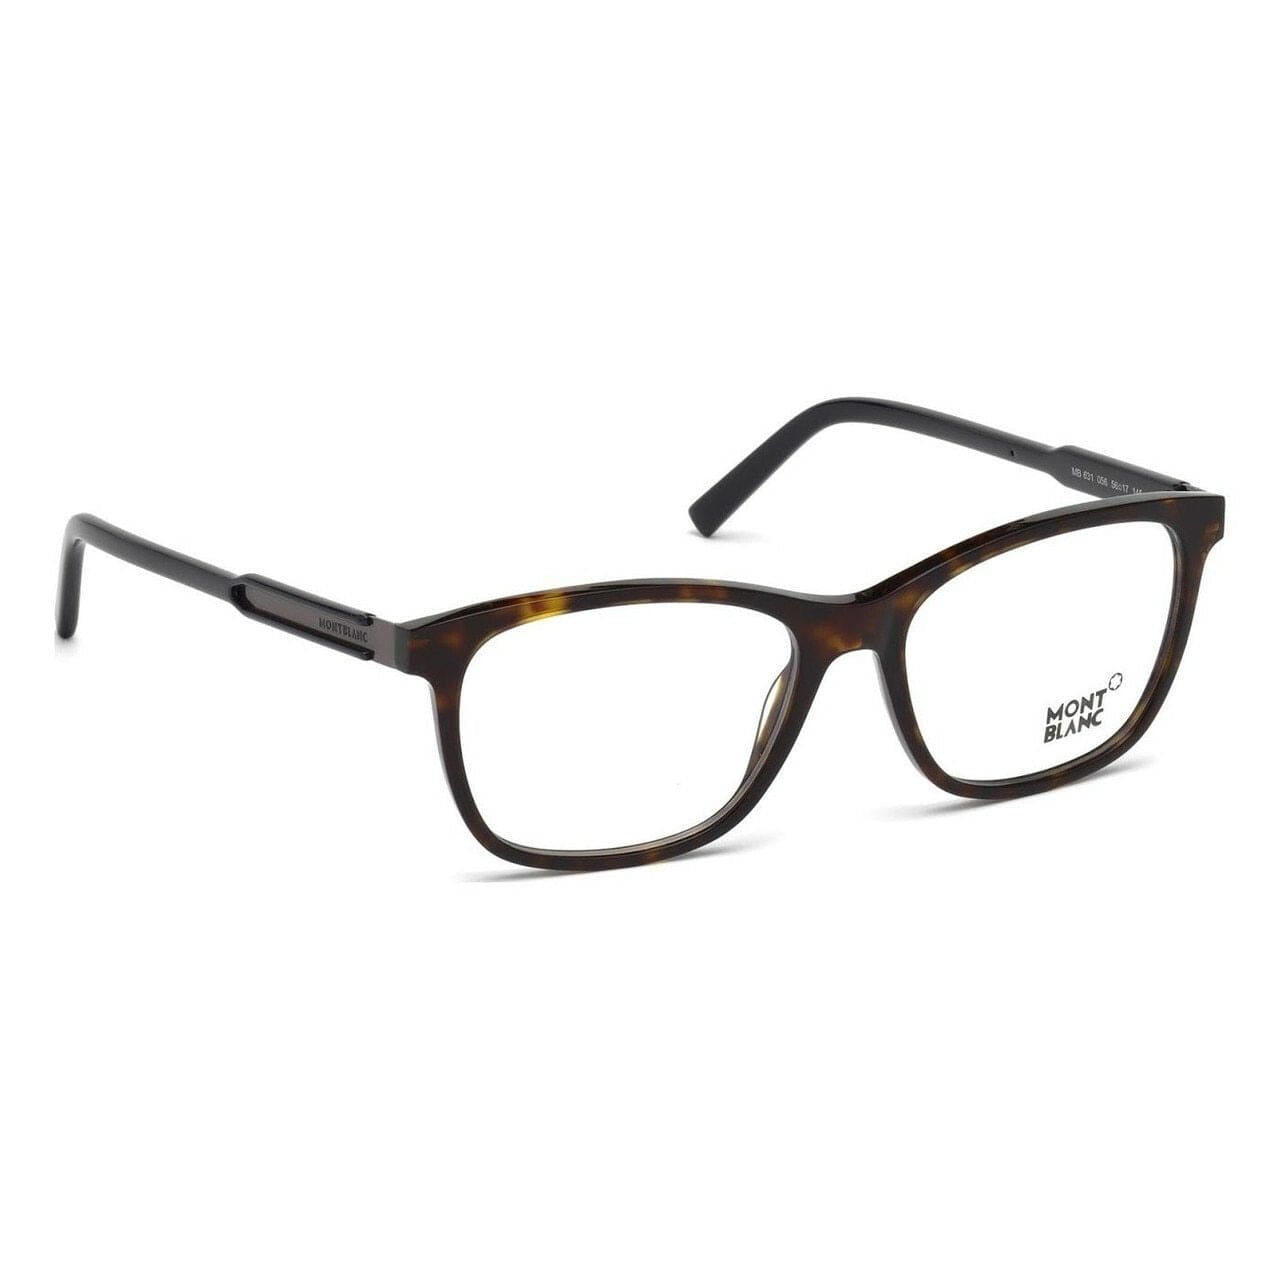 Montblanc MB0631-056 Havana Full Rim Men's Square Eyeglasses Frames 664689786947